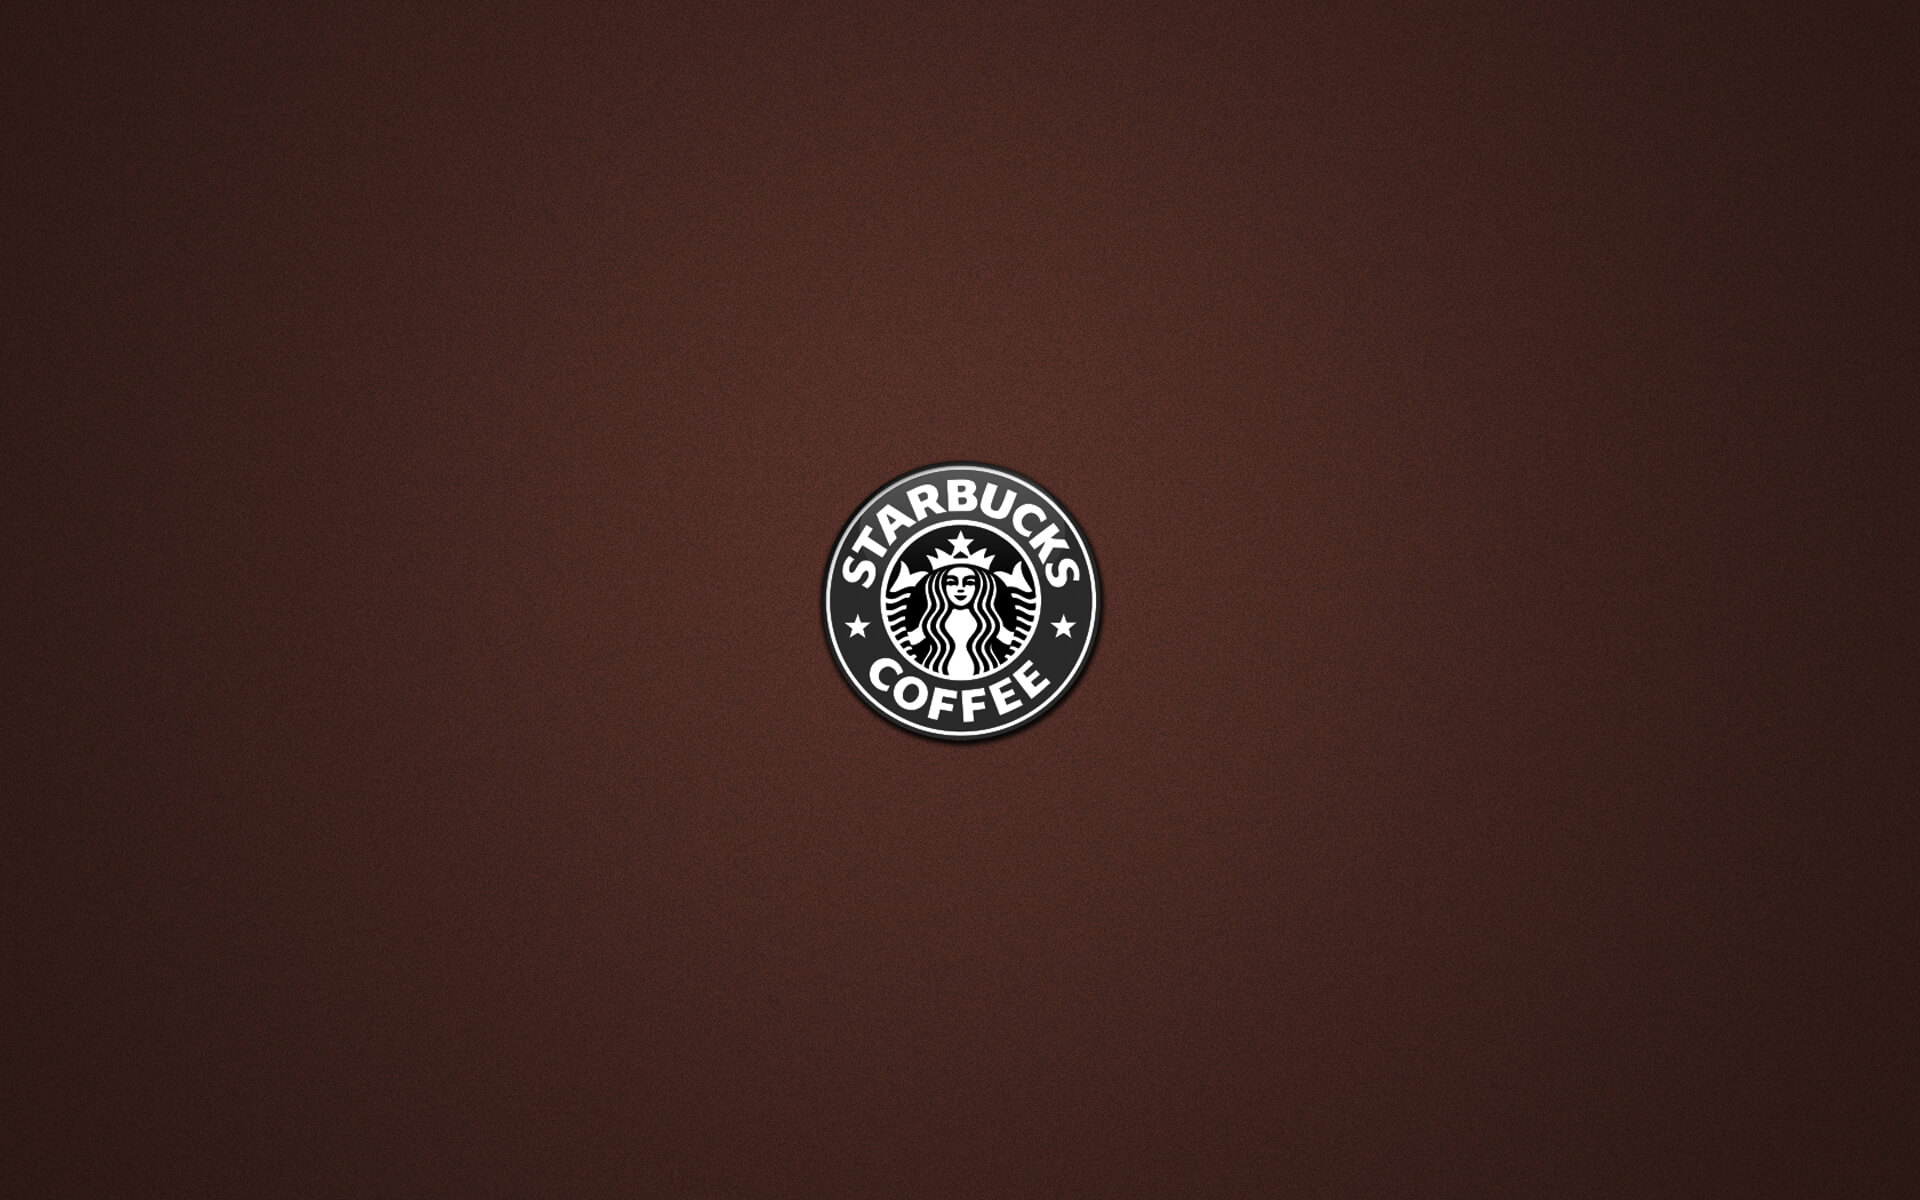 Starbucks Logo Backgrounds For Powerpoint Templates – Ppt Regarding Starbucks Powerpoint Template